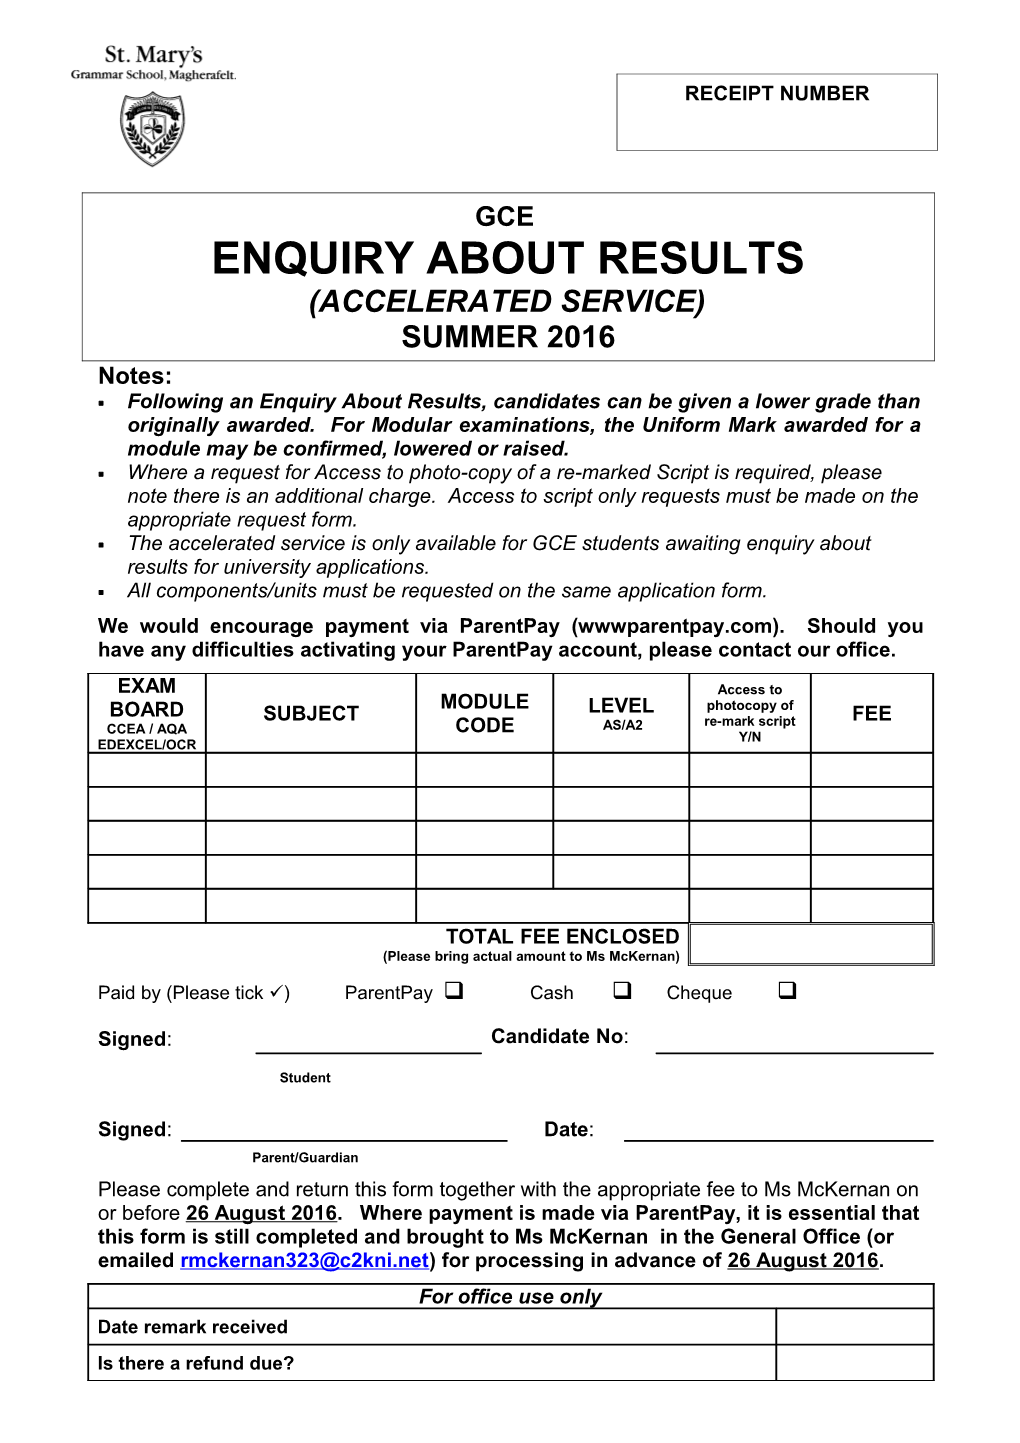 GCE Examination Entries January 2005